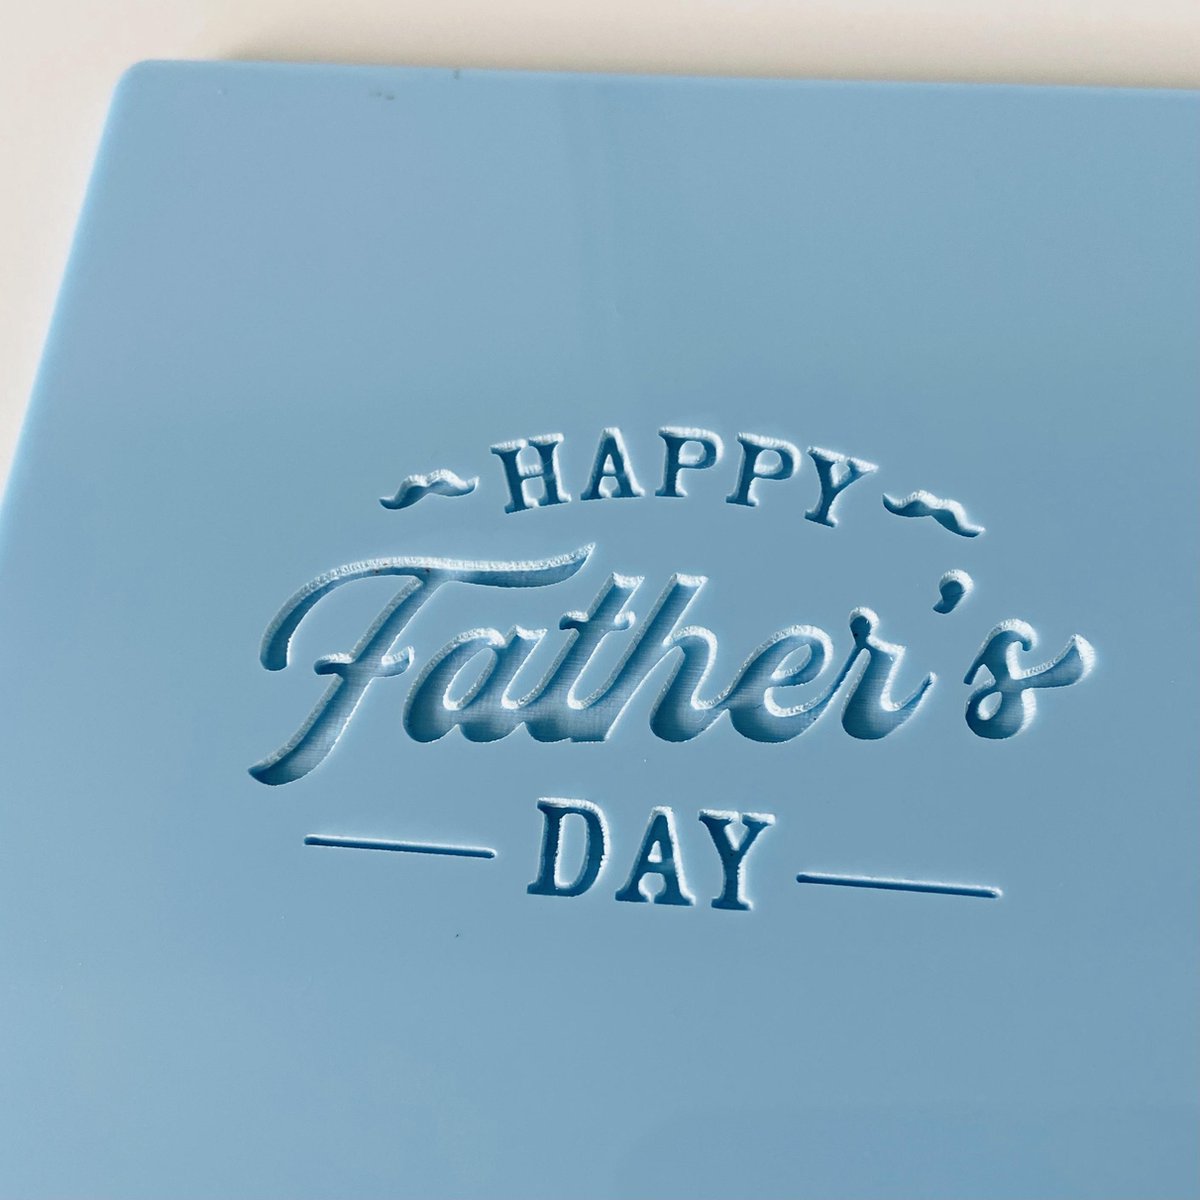 Fondant stempel Happy Father's Day - Vaderdag - marsepein stempel - koekstempel - bakken - koekjes bakken - fondantstempel